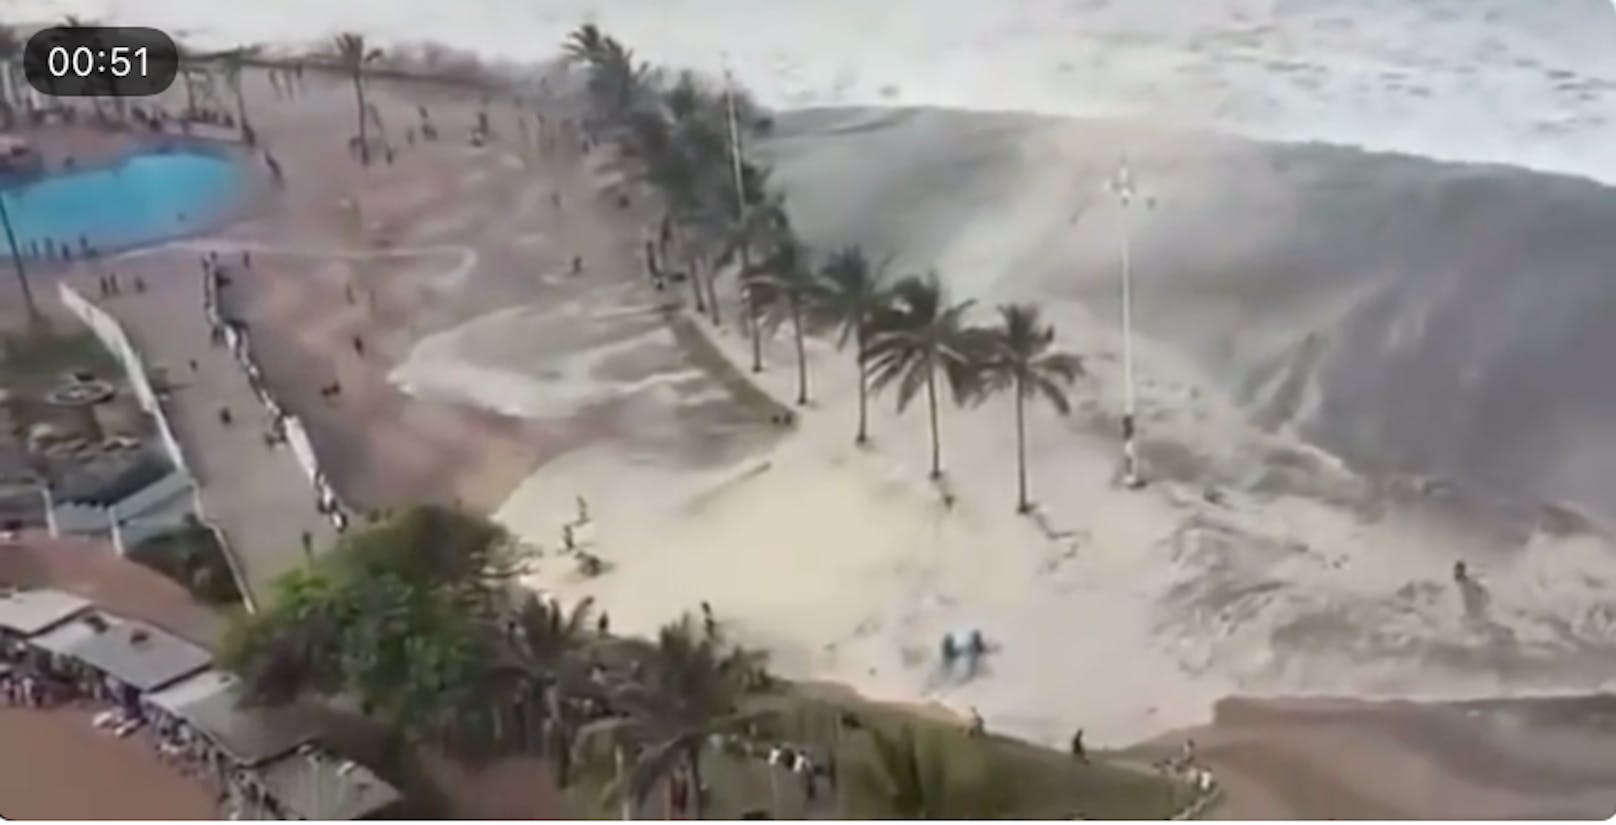 Auch ein Video, aus dem dieser Screenshot stammt, wurde aus dem Zusammenhang gerissen. Angeblich zeigt es einen Tsunami in der Türkei, der durch die Erdbeben ausgelöst wurde. Doch das Video stammt aus dem Jahr 2017 und zeigt vom Wind hochgepeitschte Wellen im südafrikanischen Durban.